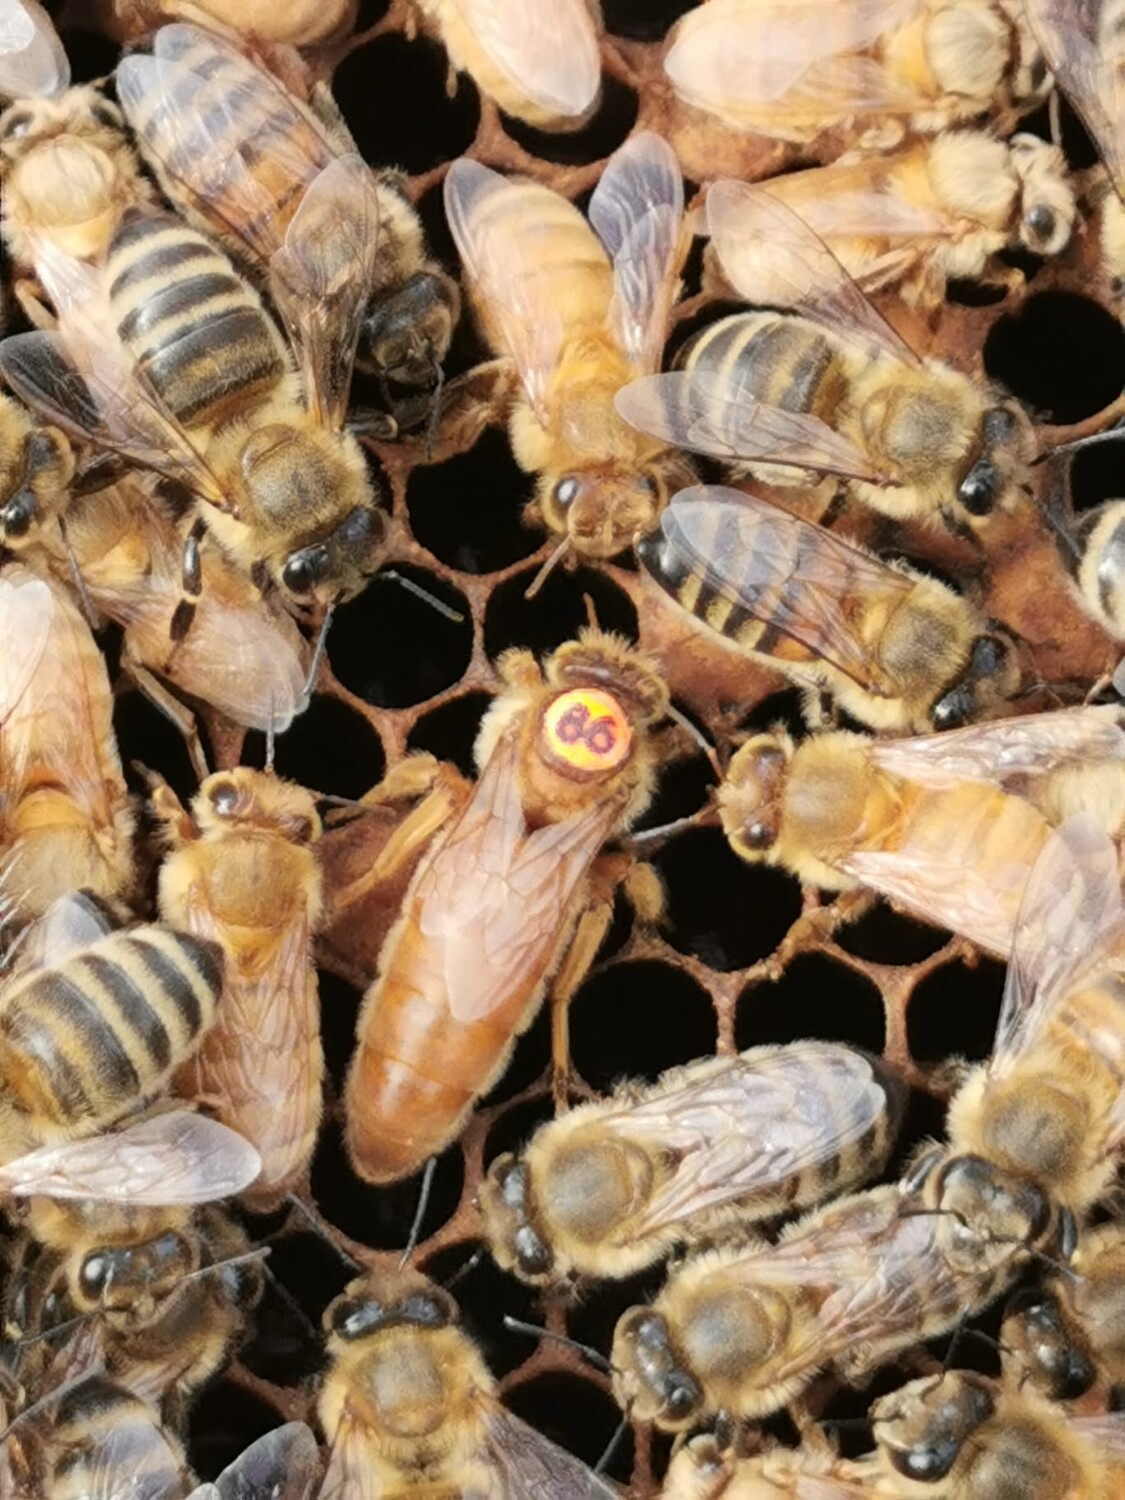 Standbegattete Bienenkönigin Ligustica Cordovan